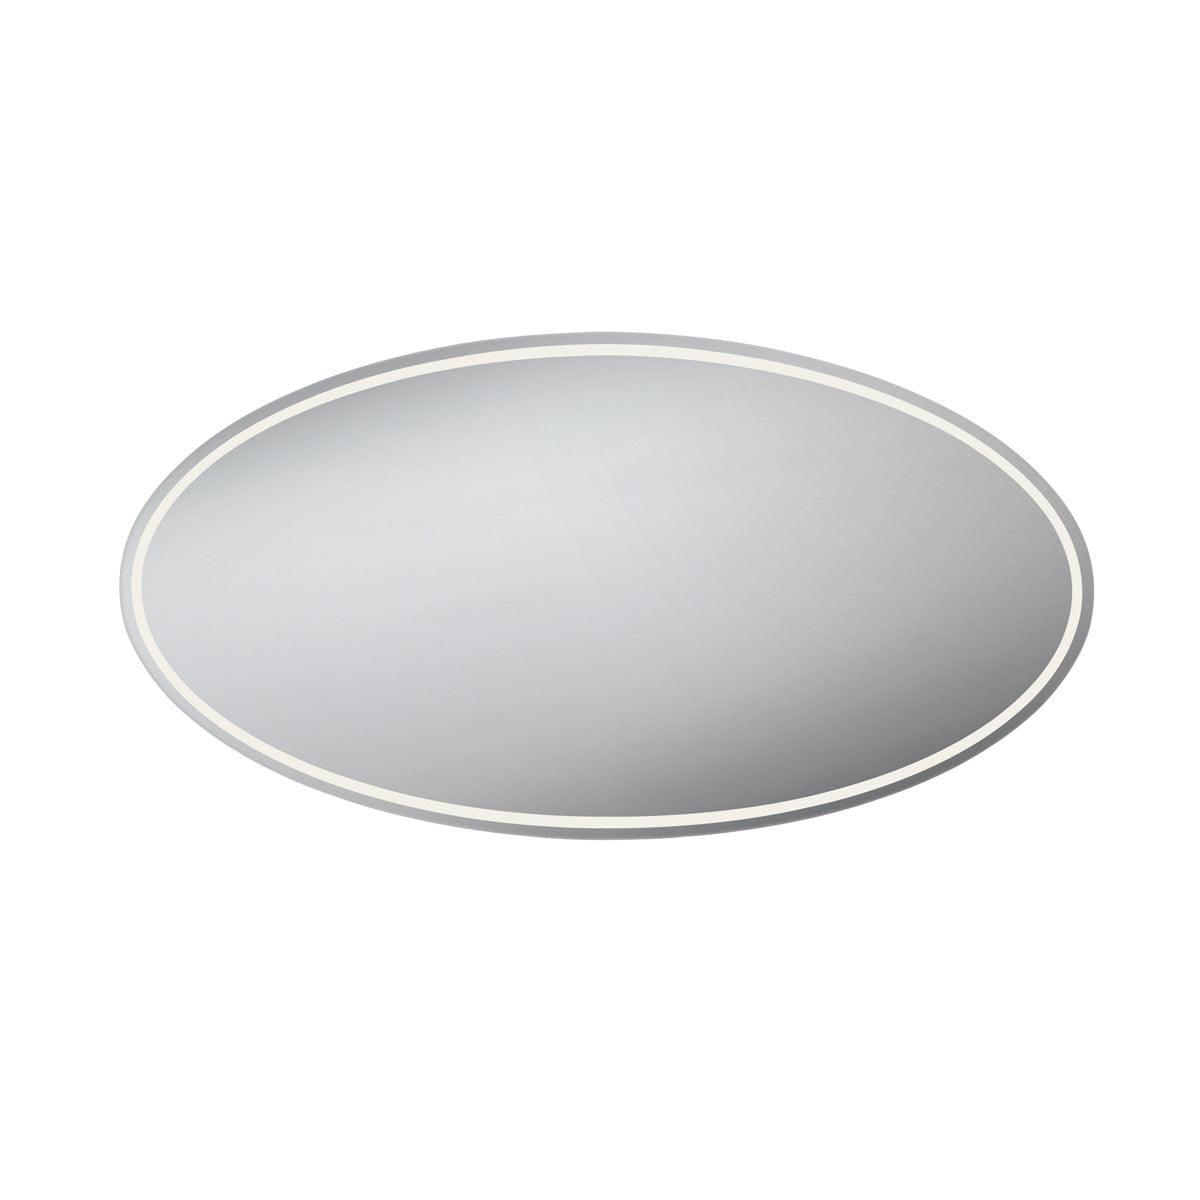 Eurofase - Aspen Oval LED Mirror - 29106-011 | Montreal Lighting & Hardware